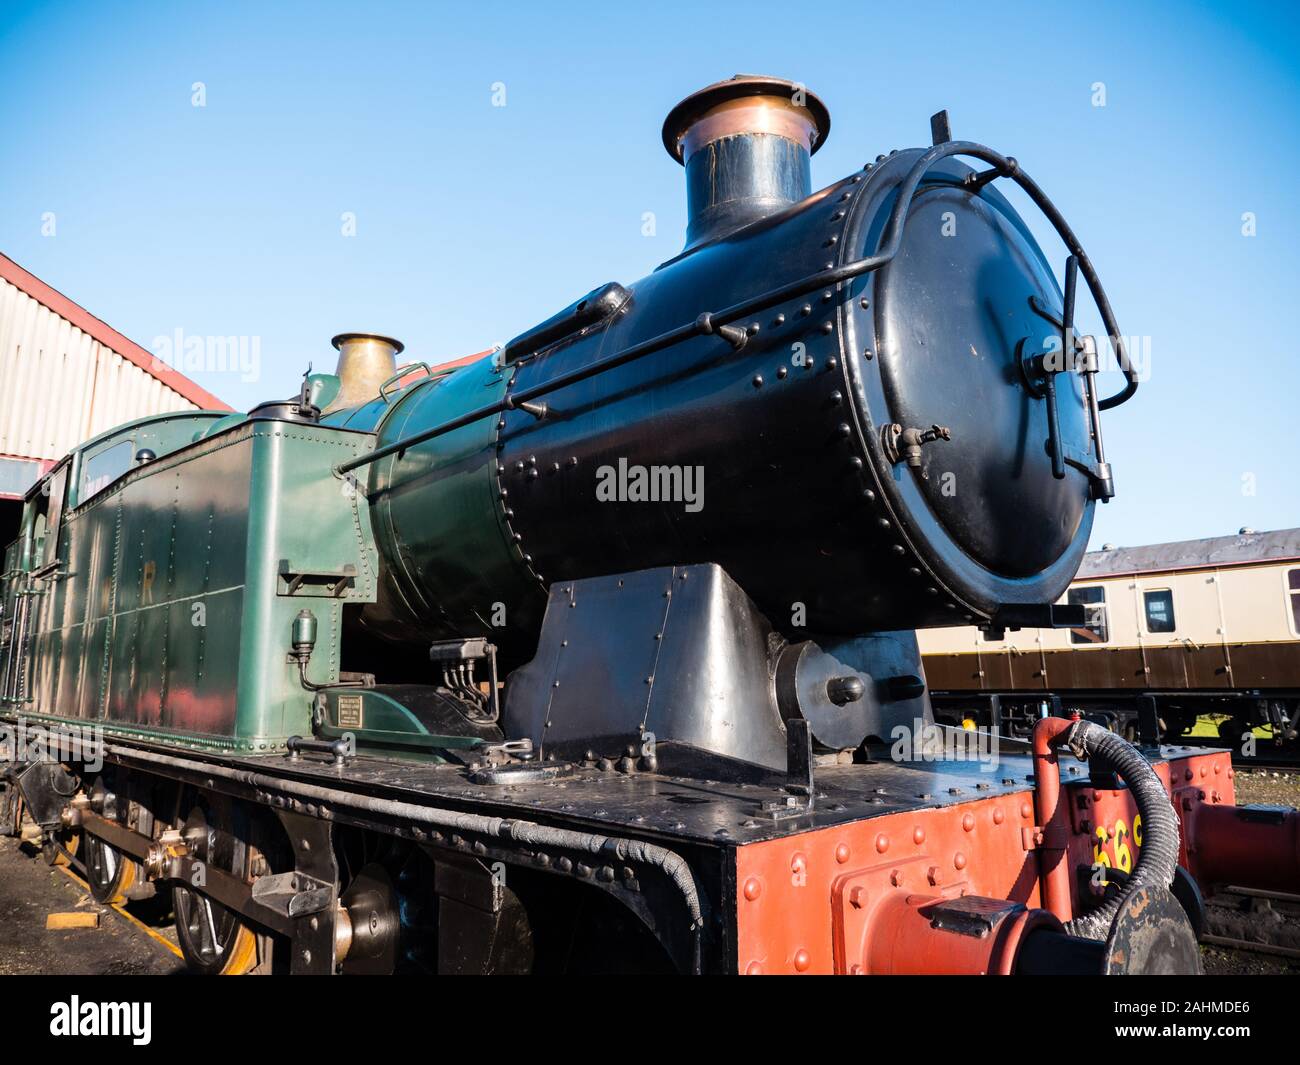 7202 - 72xx Class GWR Train à vapeur, Didcot Parkway, Oxfordshire, England, UK, FR. Banque D'Images